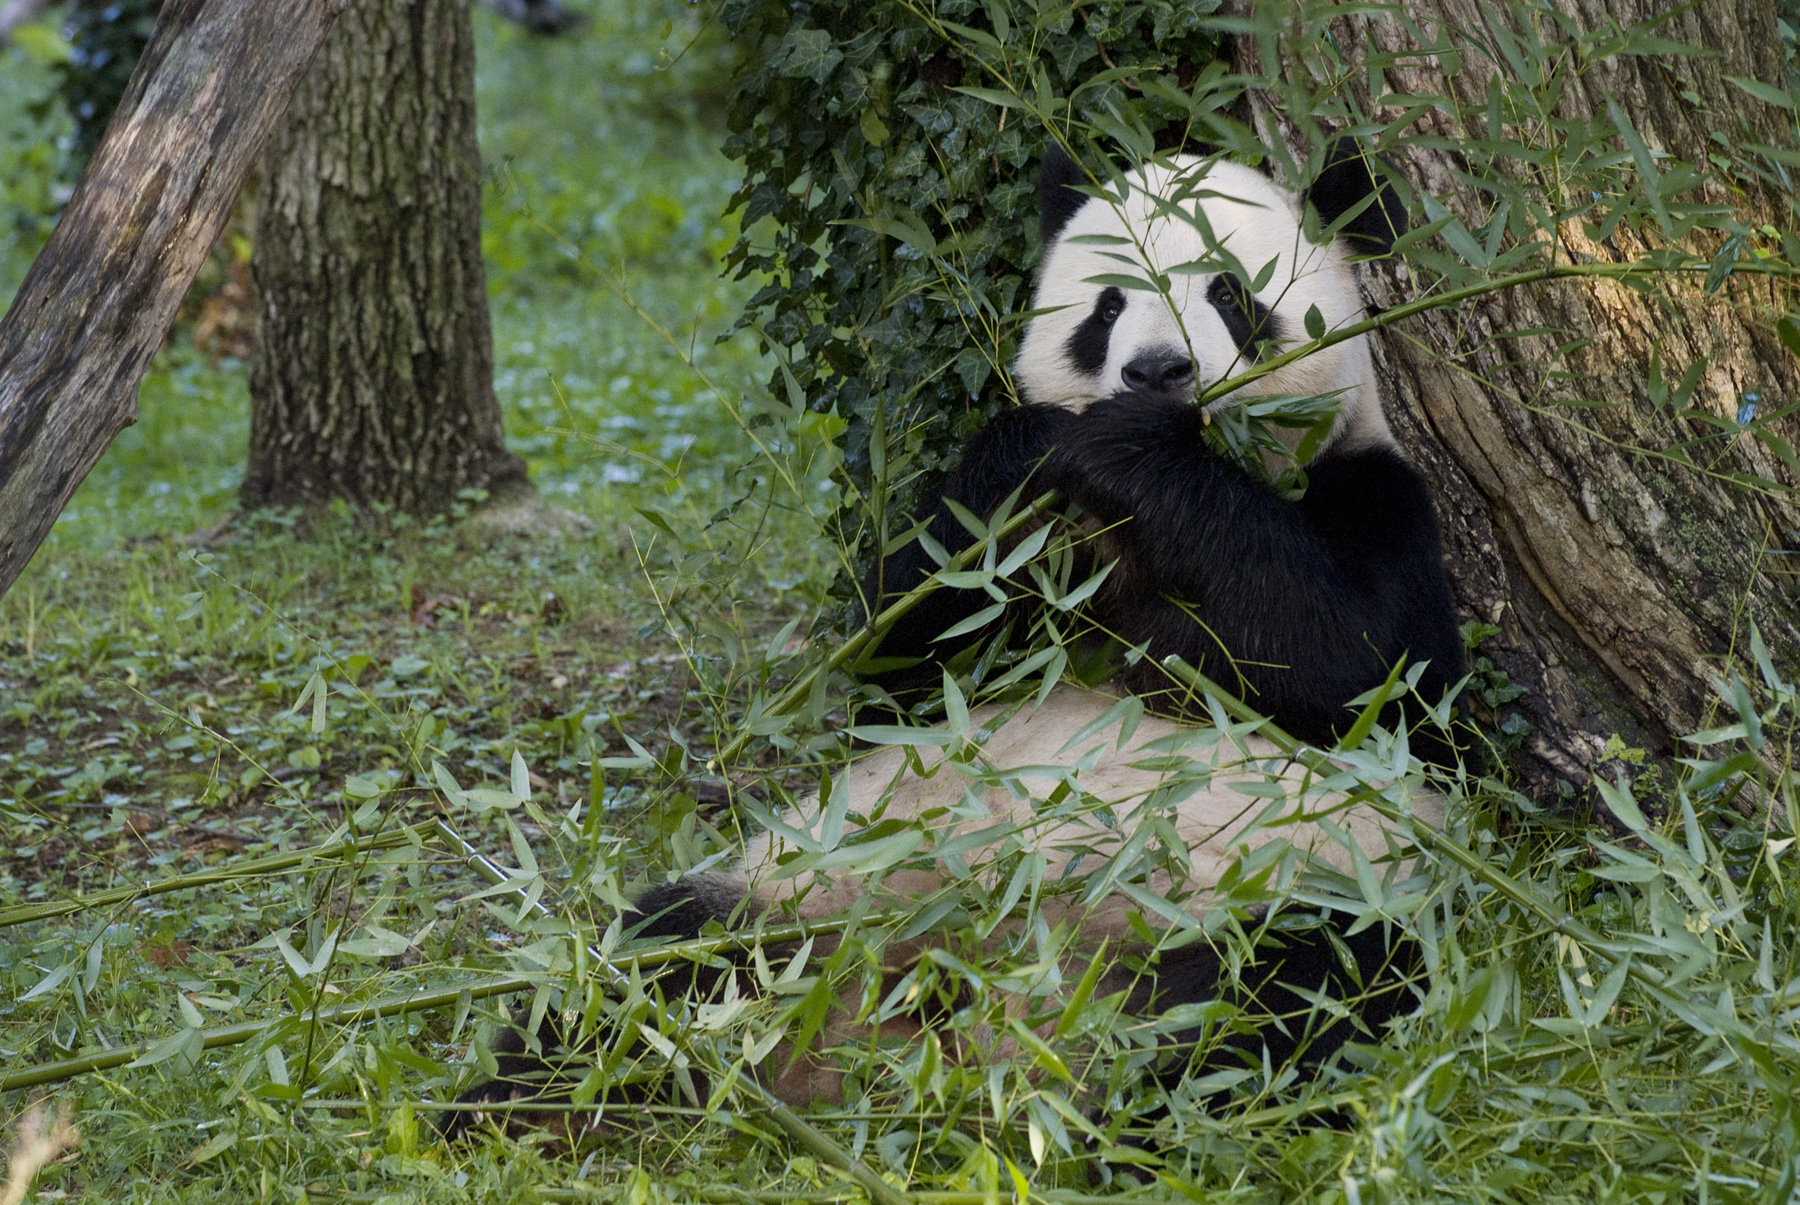 Tian Tian The Giant Panda Eating Bamboo Smithsonian Institution